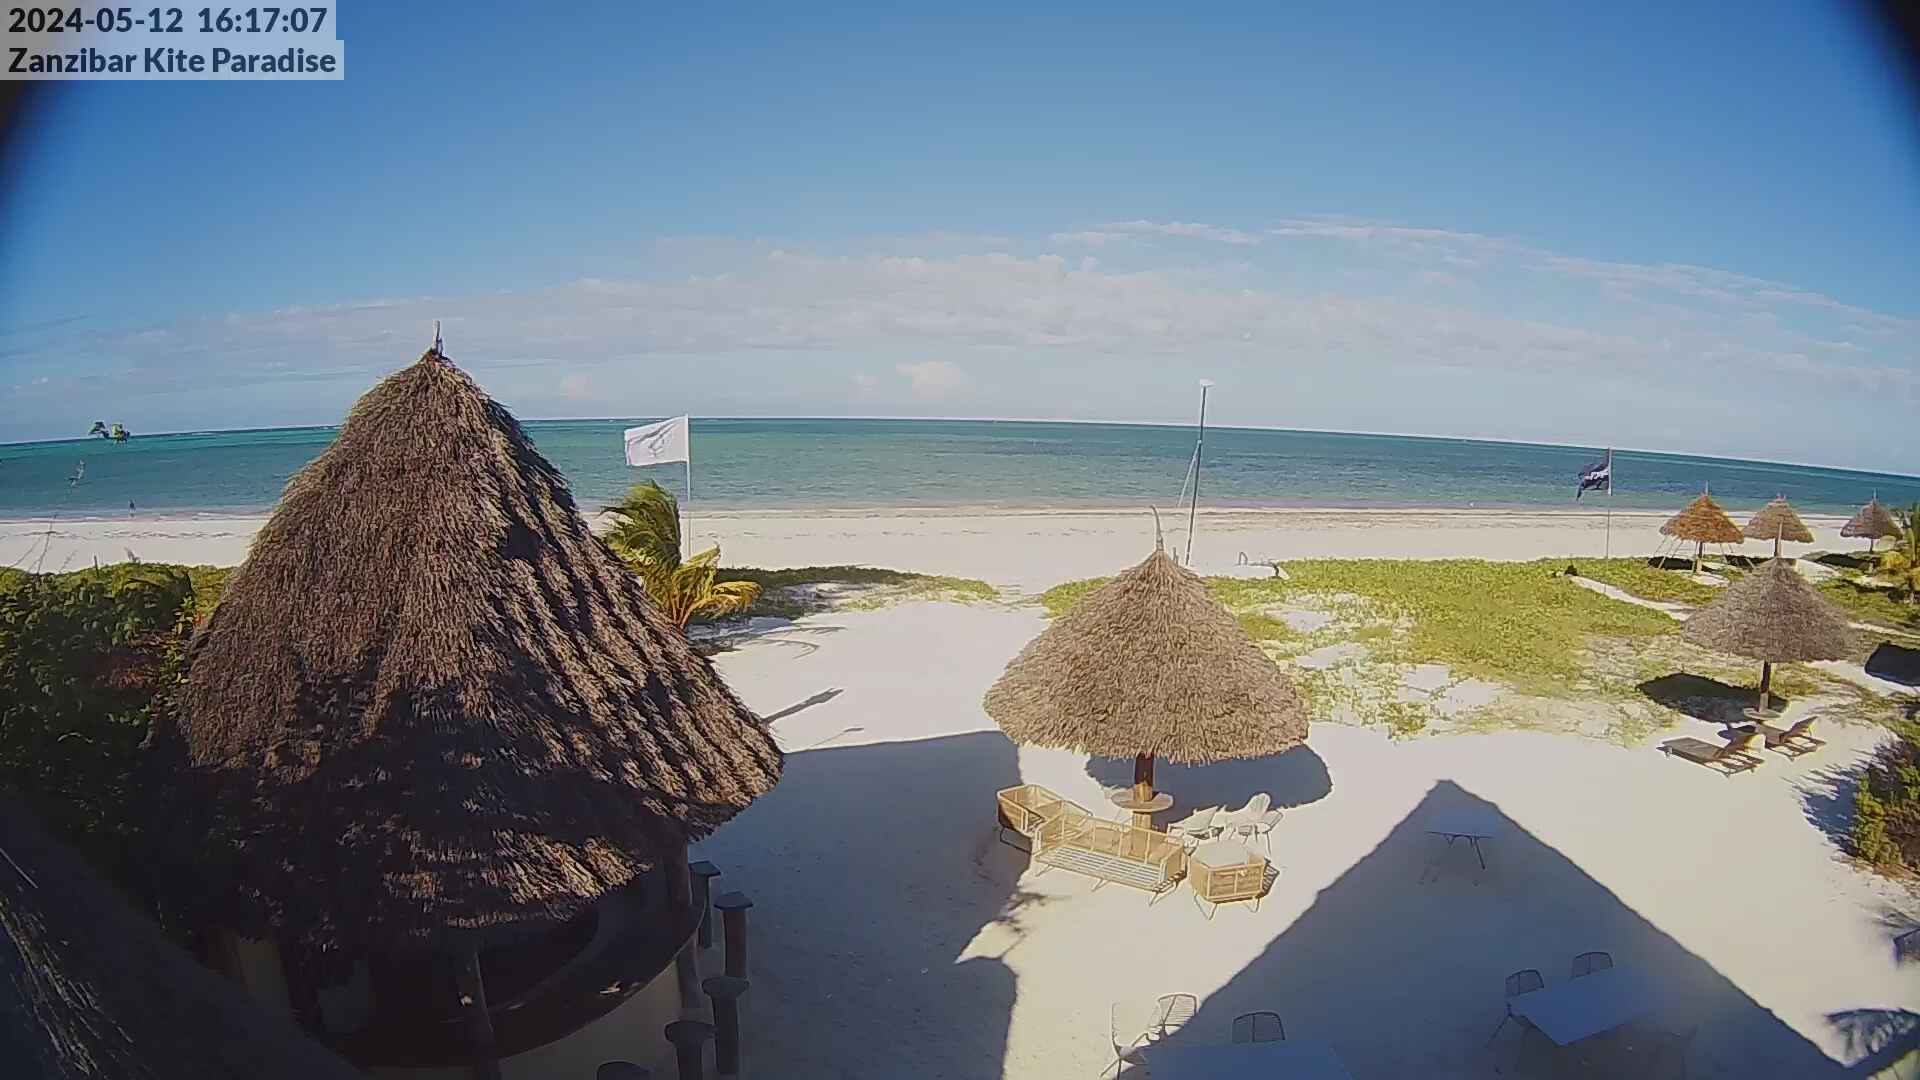 Paje Beach (Zanzibar) Ma. 16:17